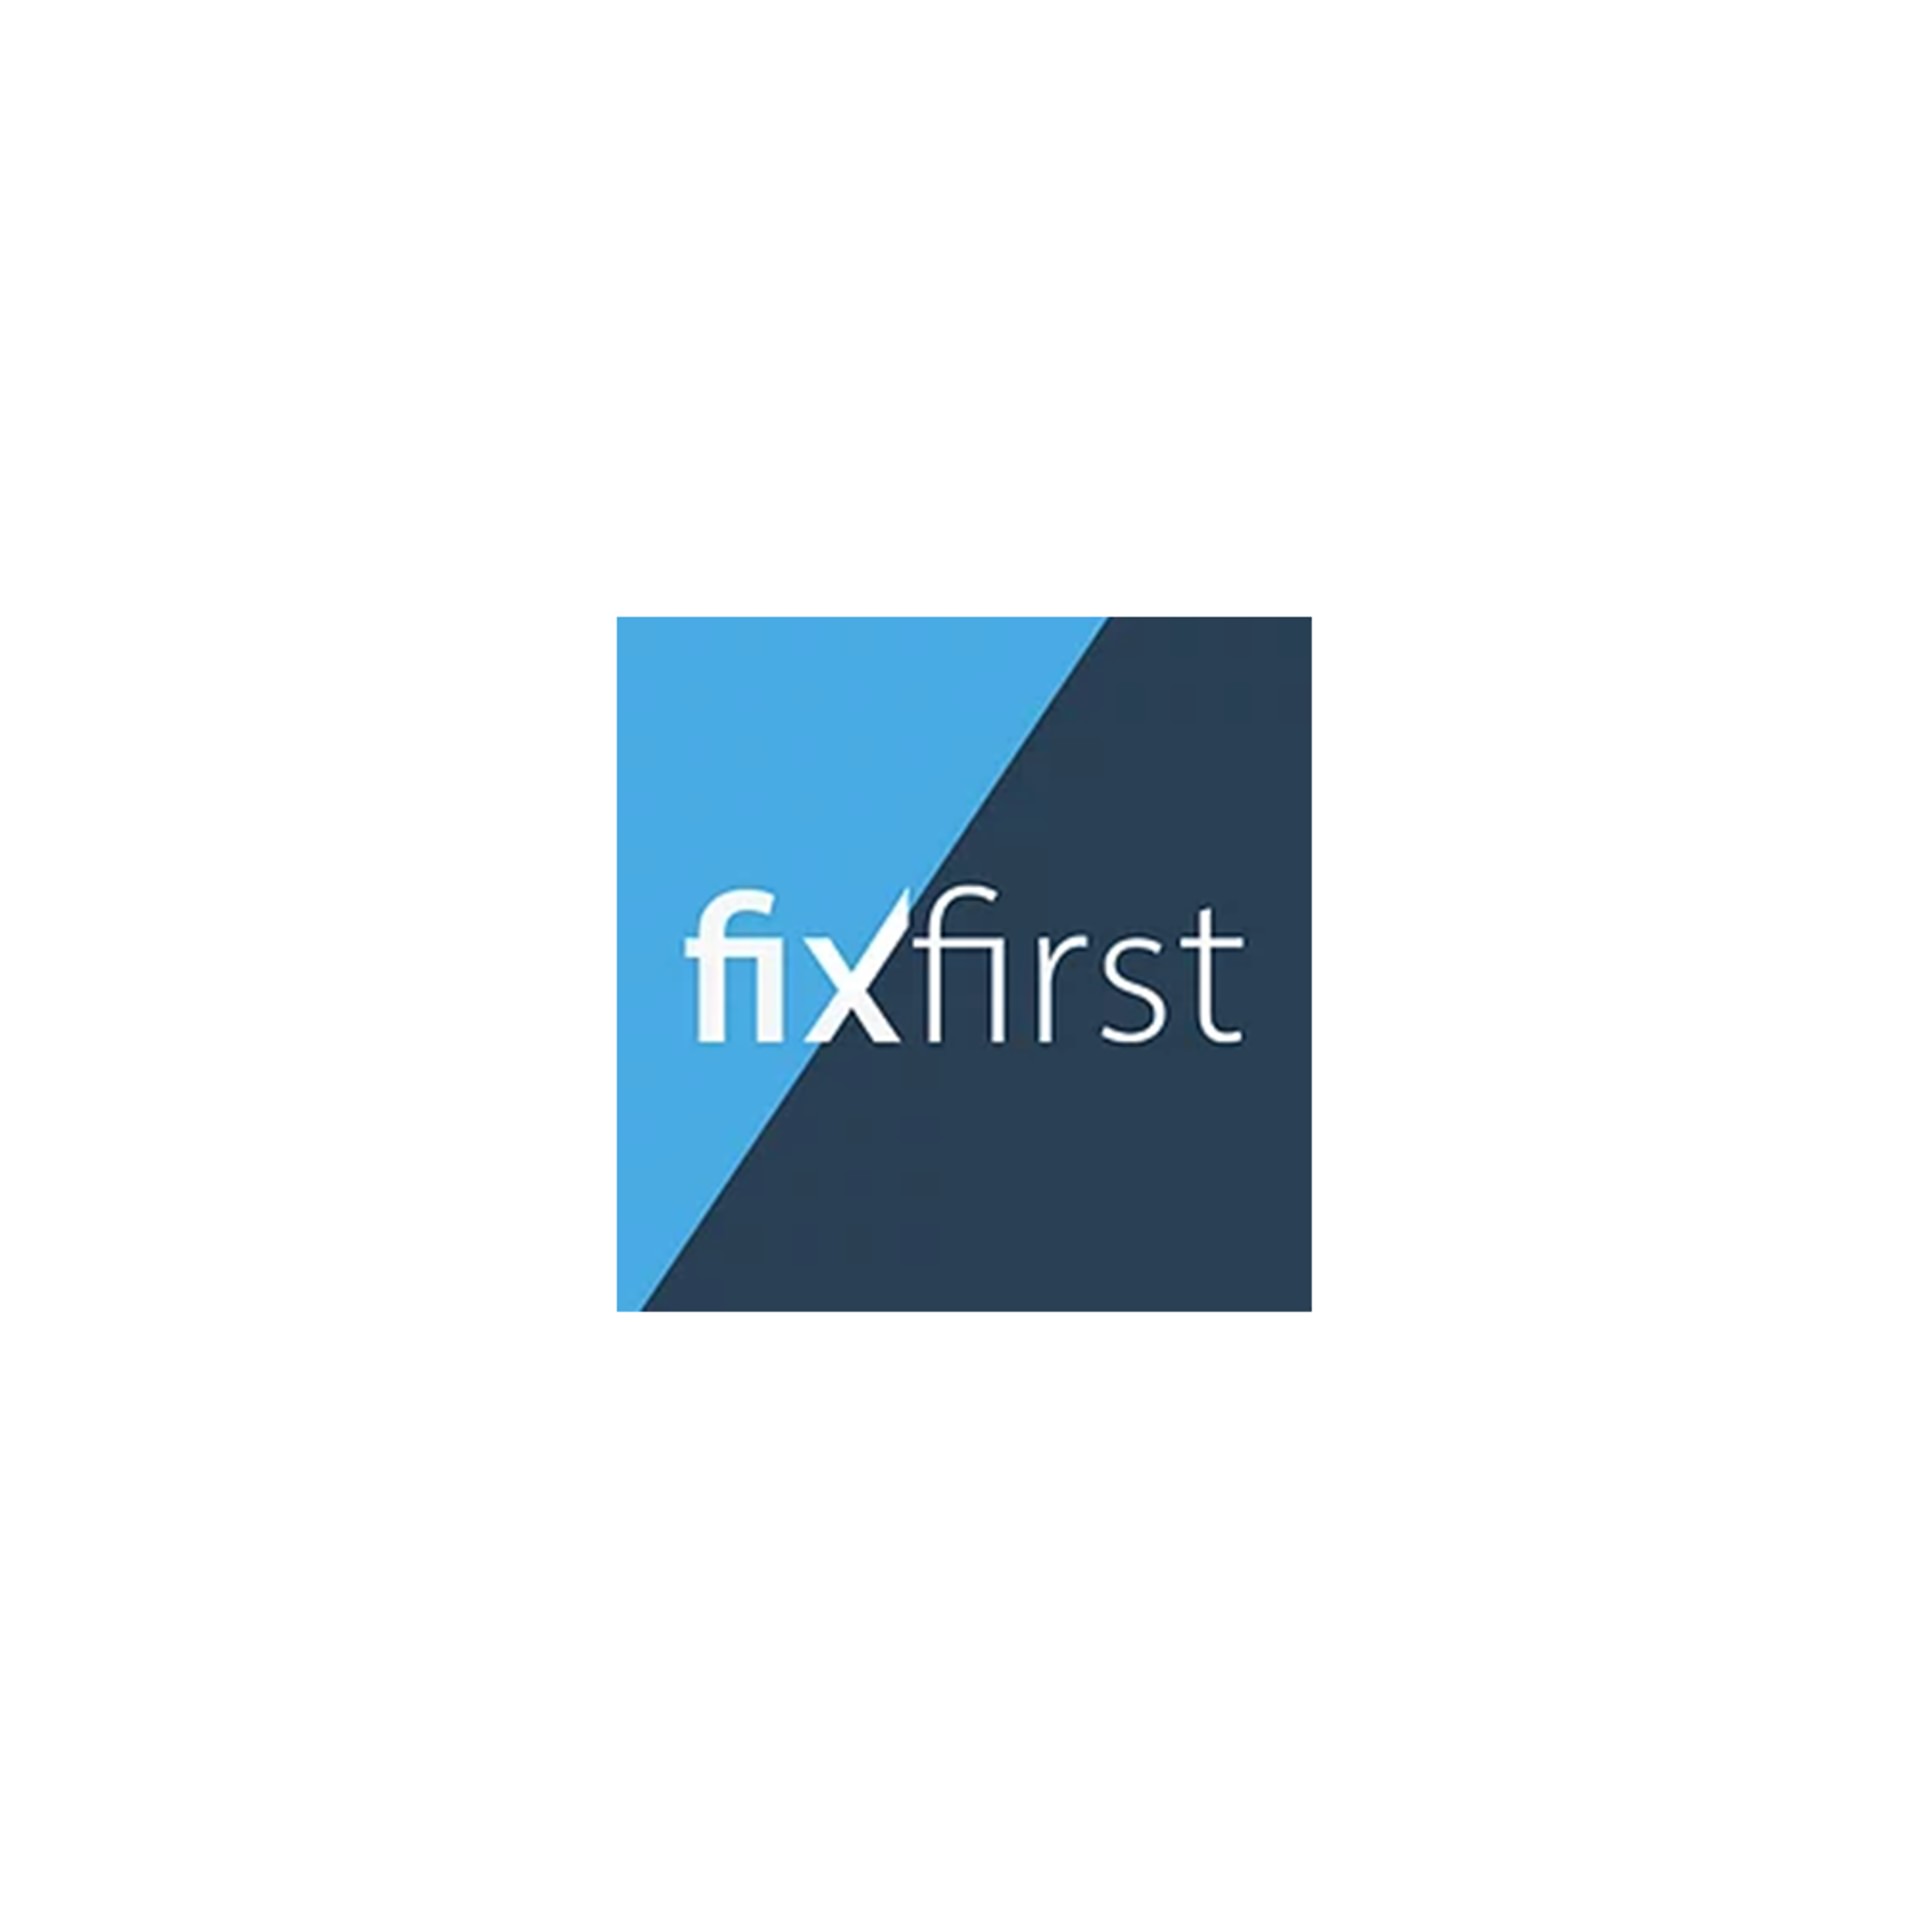 Fixfirst website